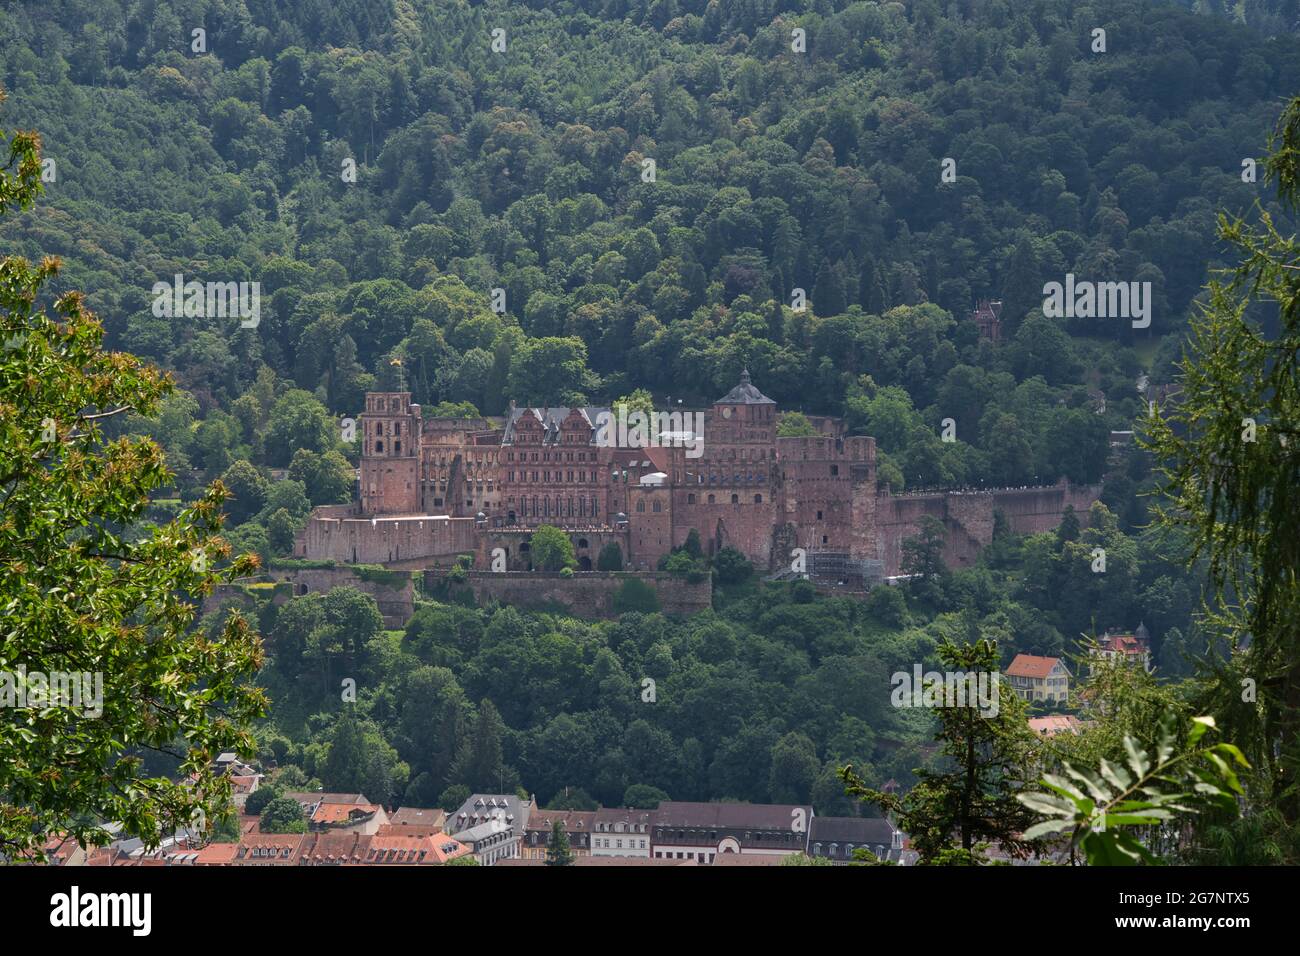 Heidelberg, Germania - una città universitaria e meta turistica popolare, il castello di Heidelberg, molto famoso Foto Stock